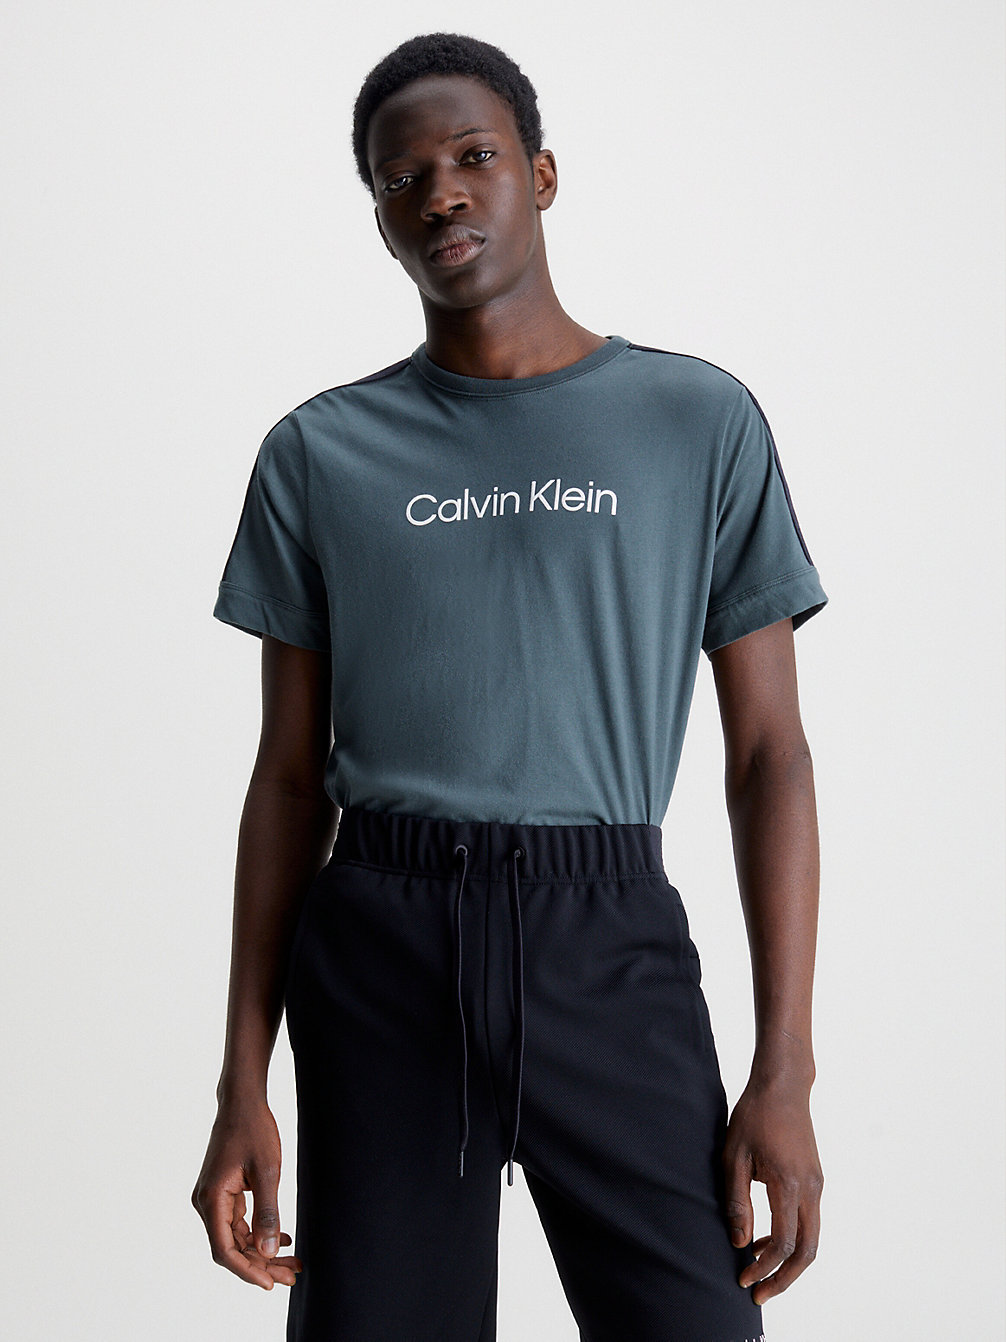 T-Shirt Da Palestra Morbida > URBAN CHIC > undefined uomo > Calvin Klein